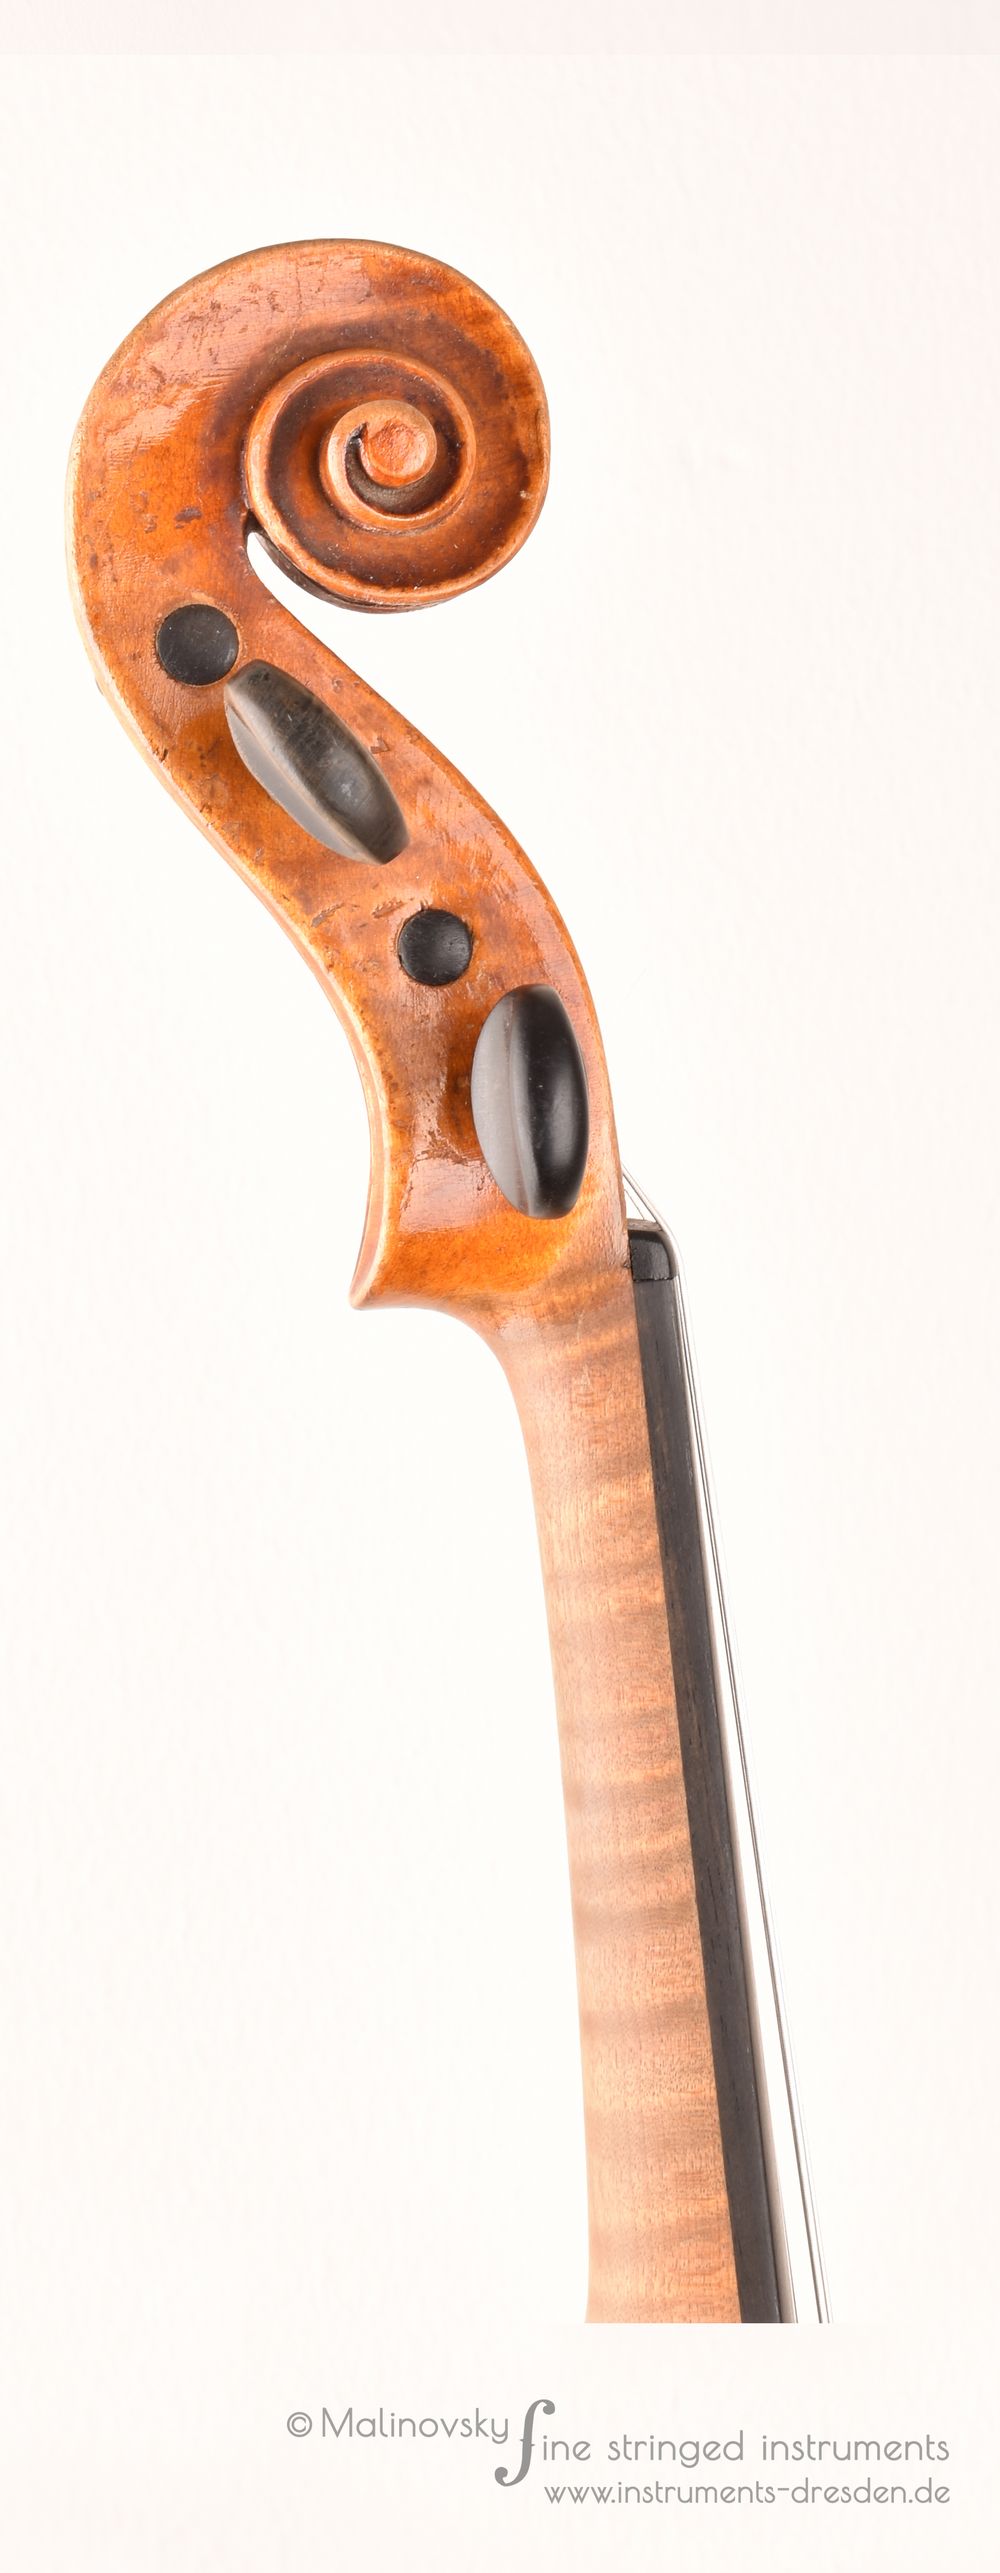  Deutsche Violine 1850